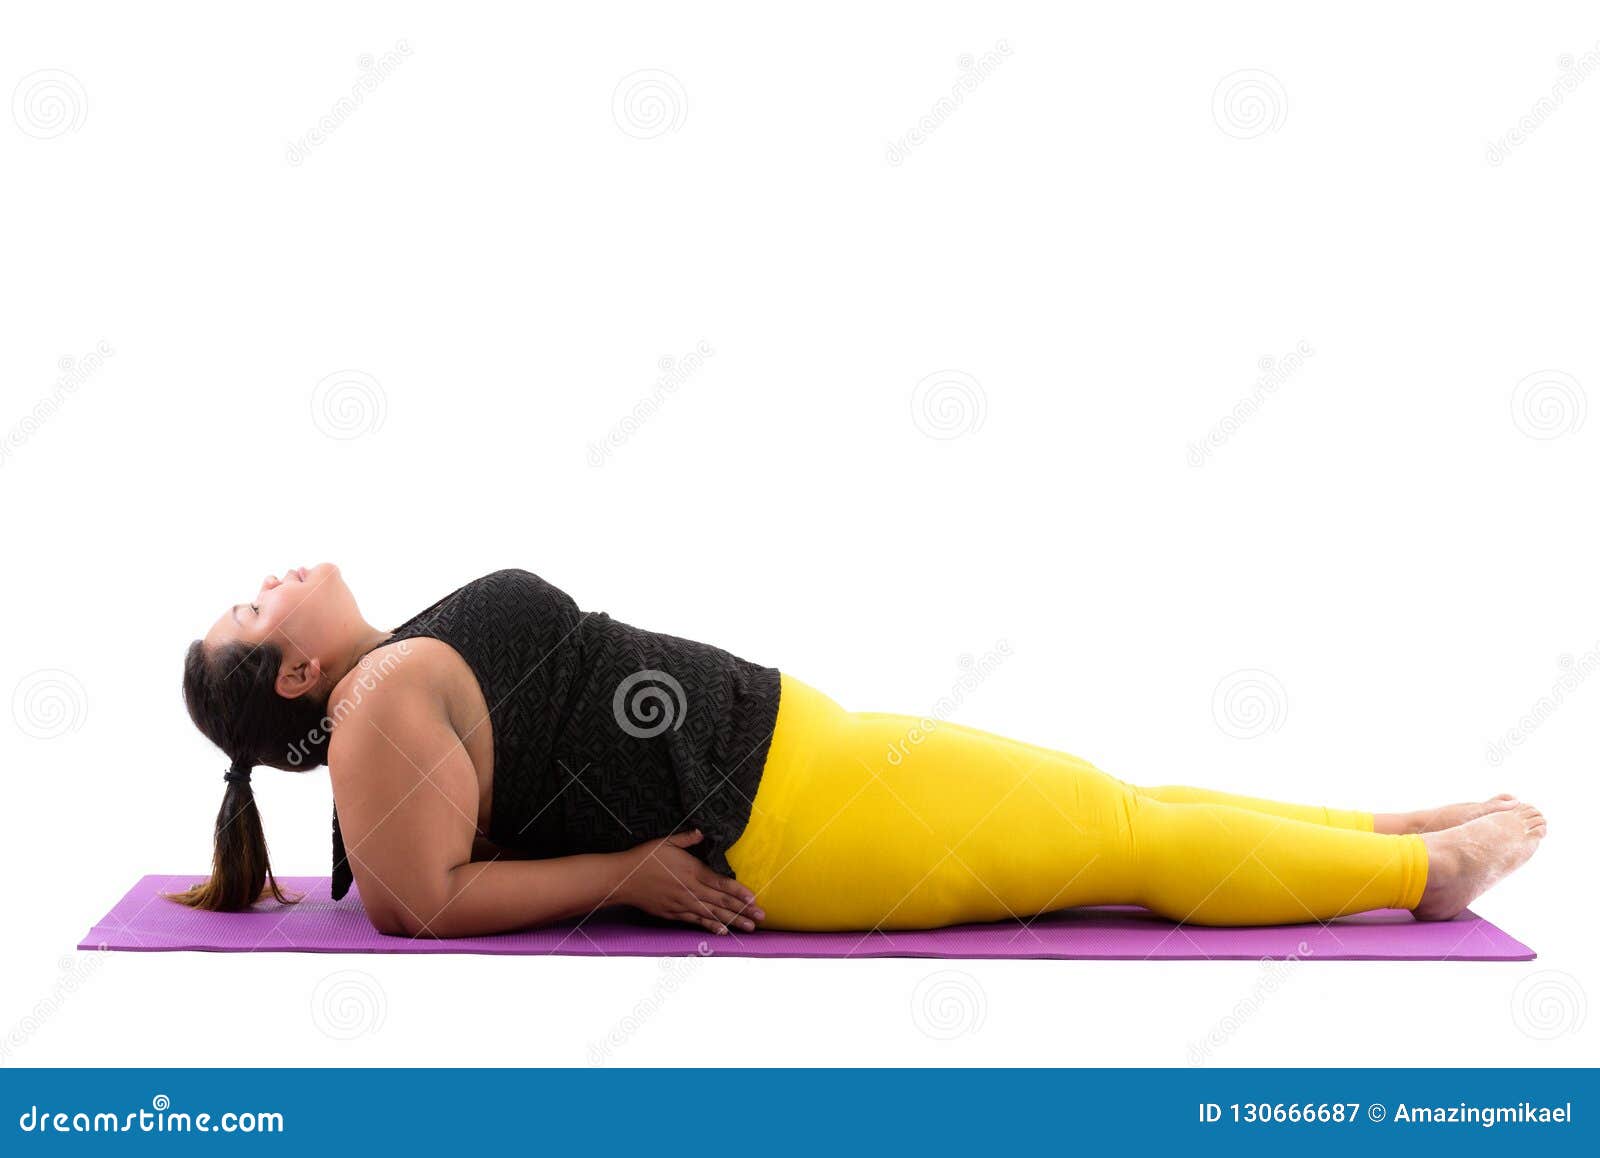 Fat Women Yoga Stock Photos - 17,326 Images